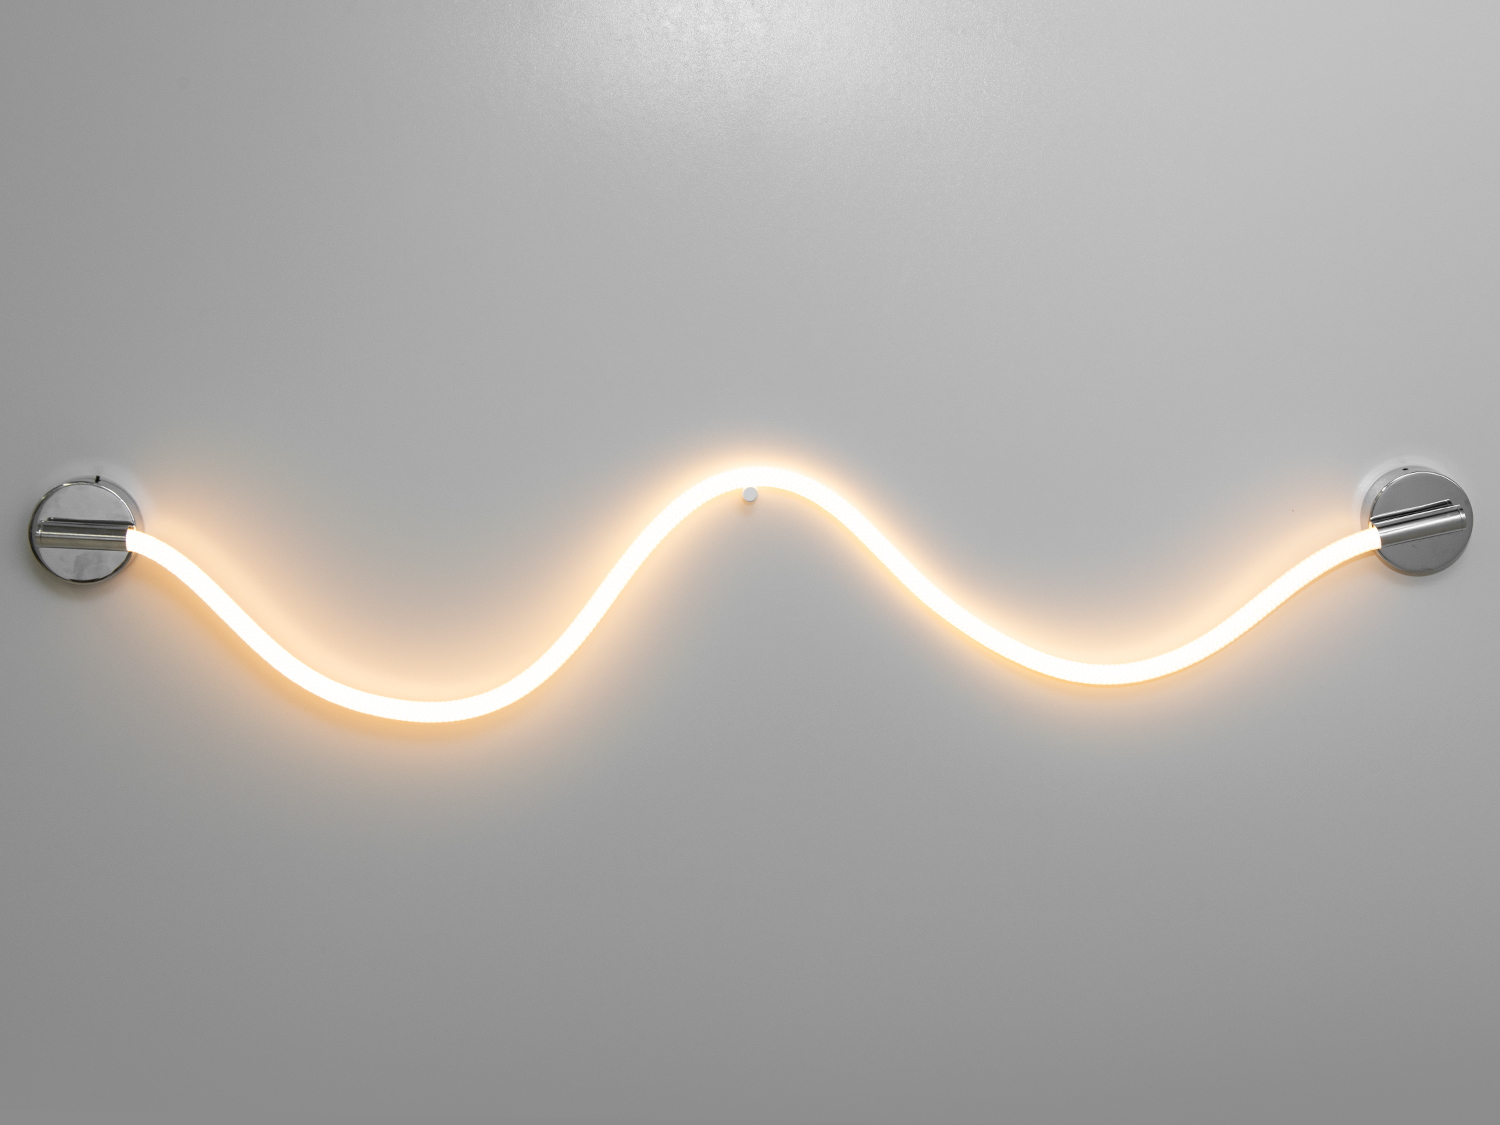 Сучасний світлодіодний світильник шланг, потужністю 18W, кольору-хромуСветодиодные бра, Светильники LED, Потолочные, Серия 